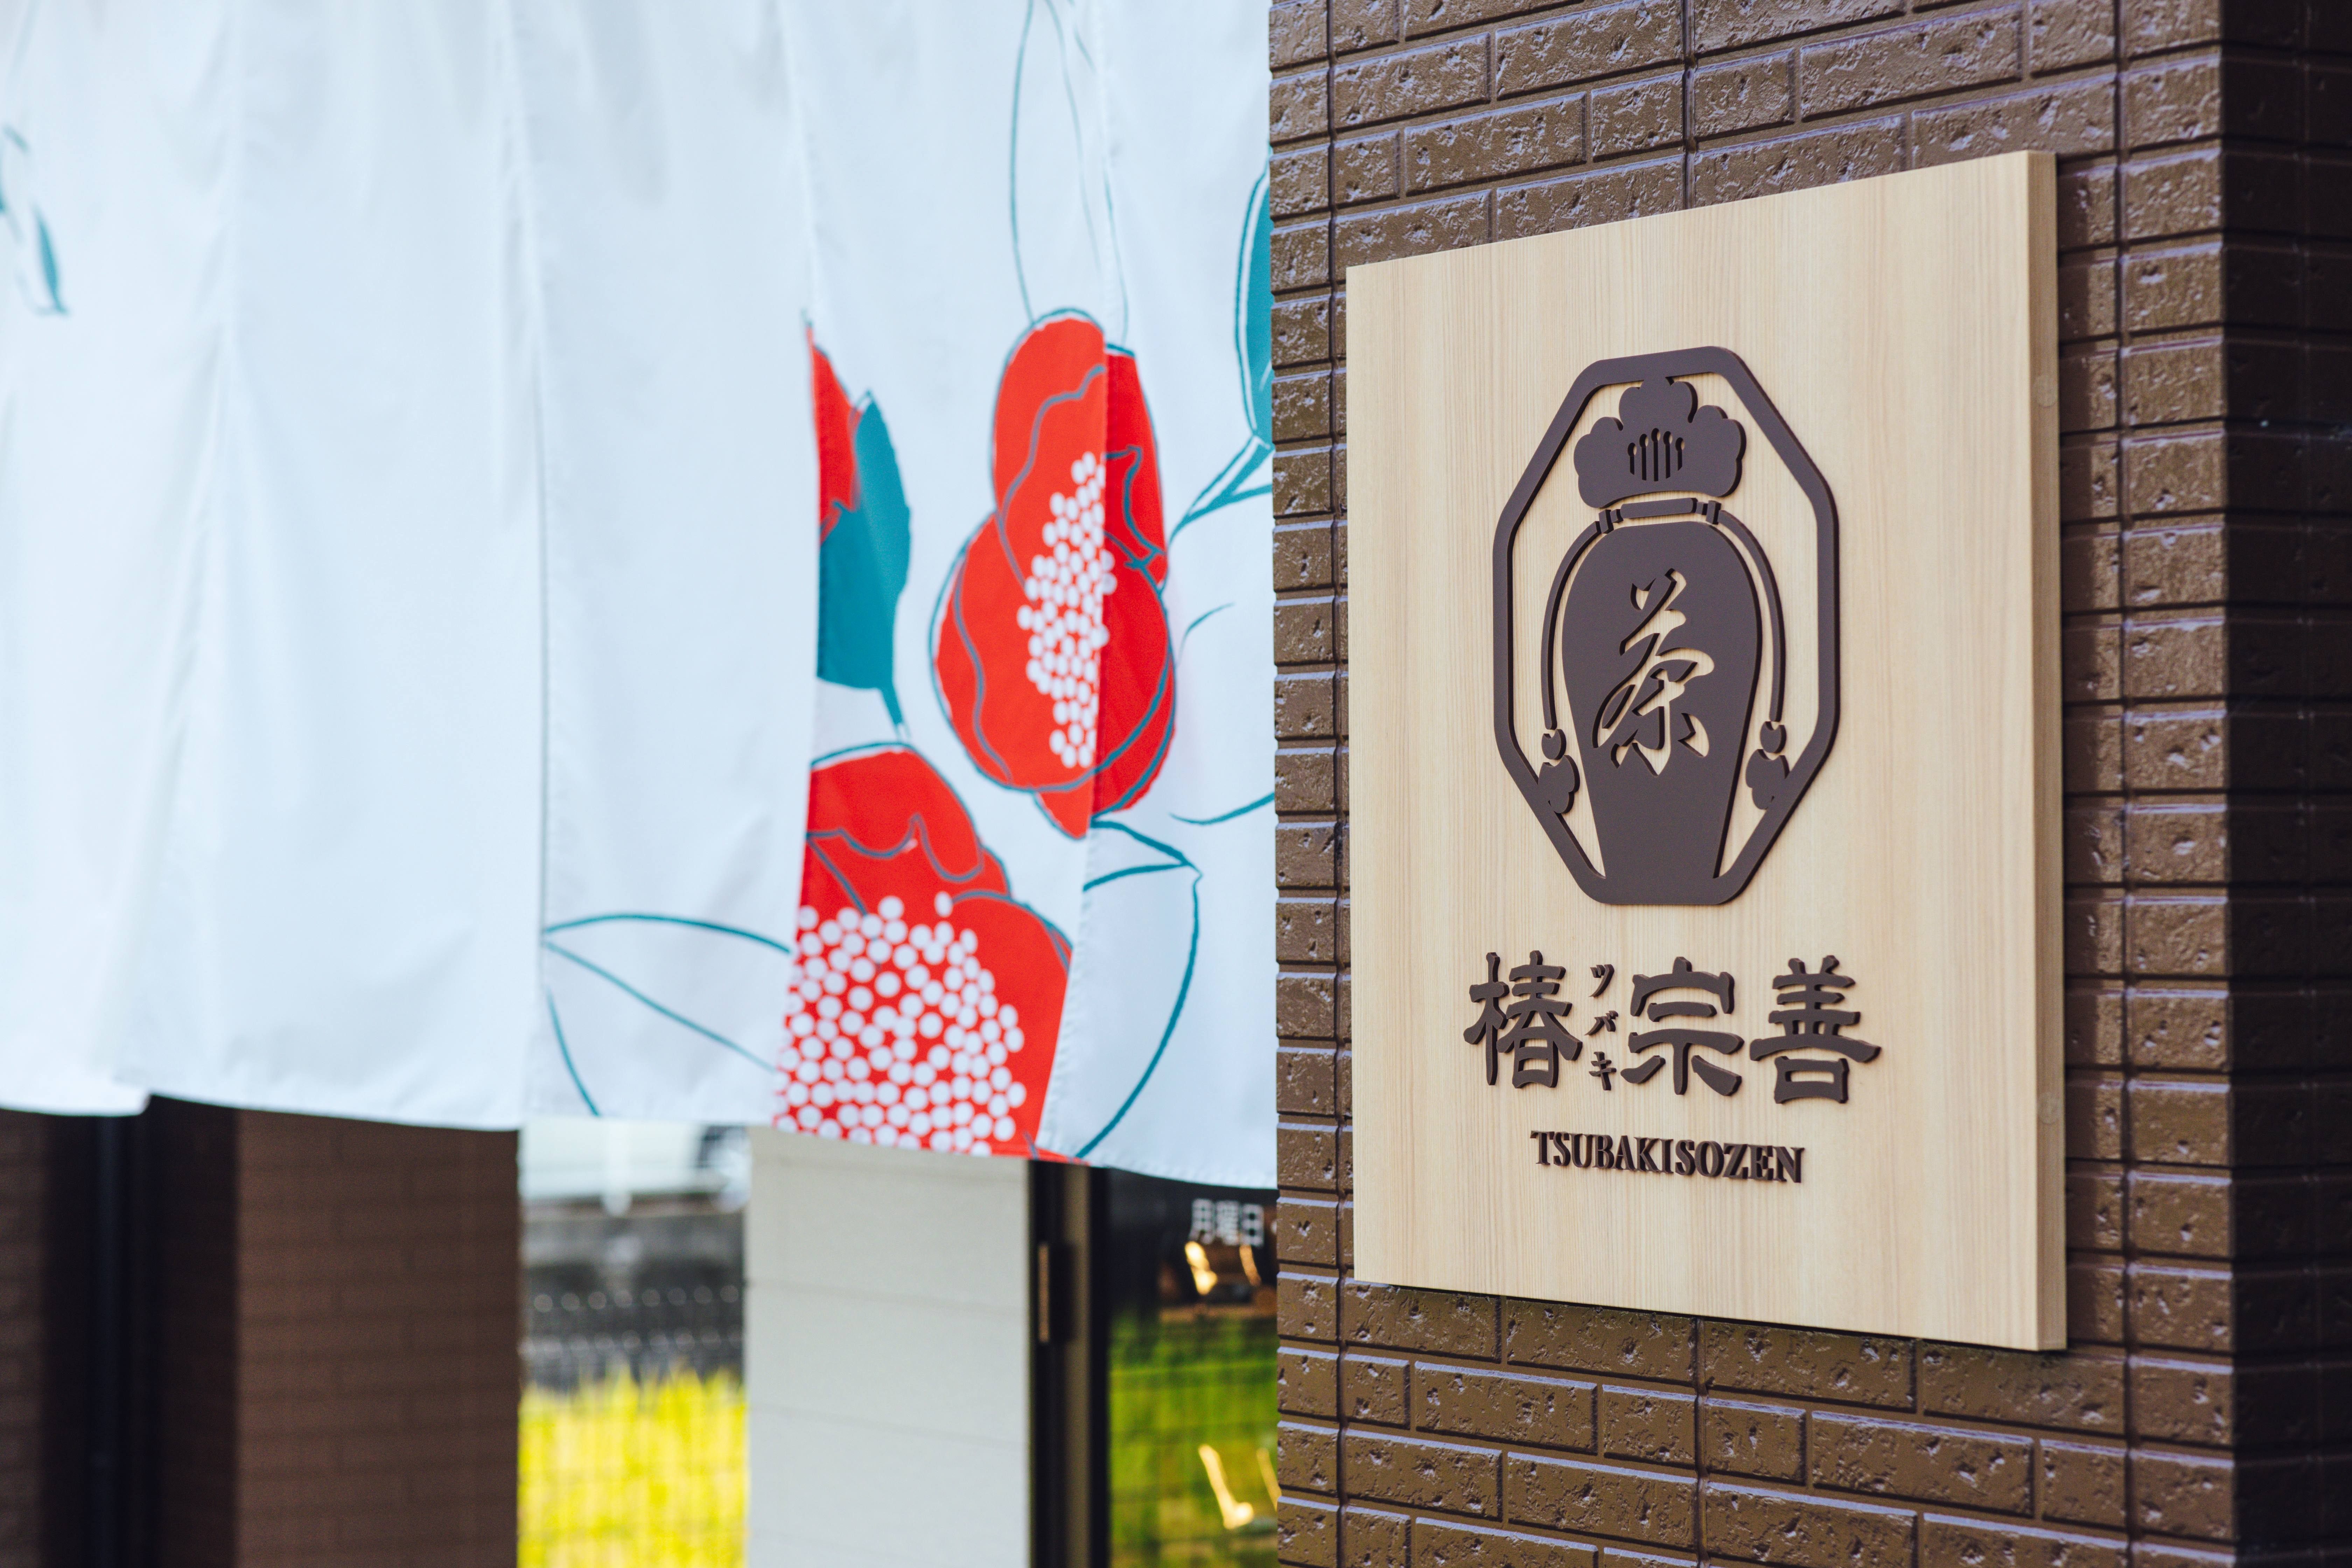 「TOKYOデザインマンホールデジタルラリー」の開催等について